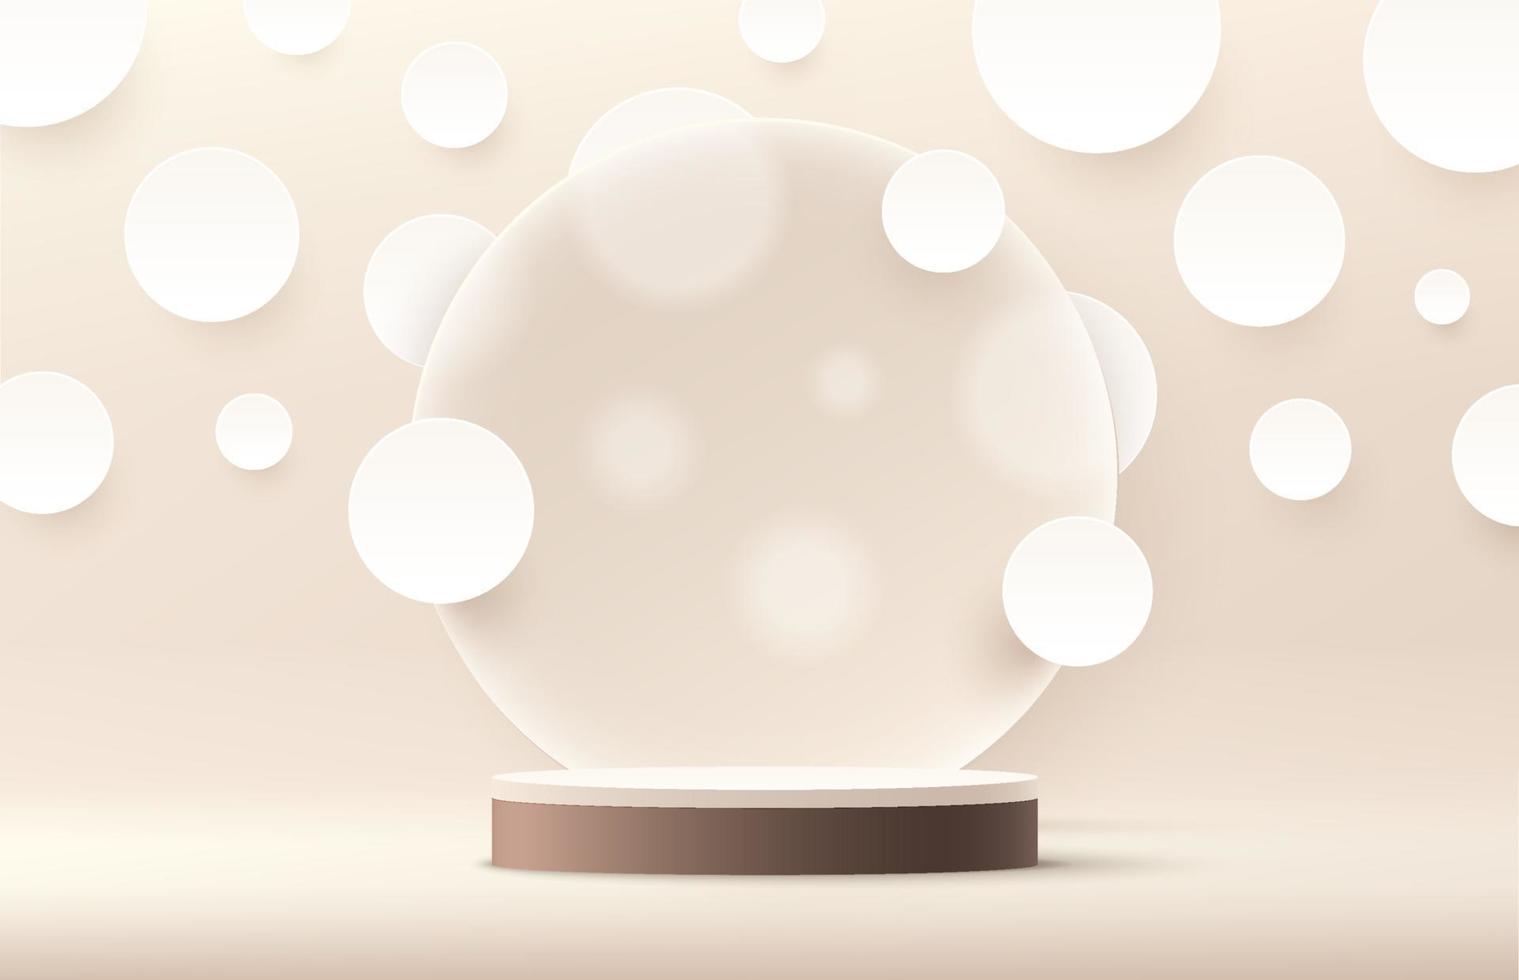 podio moderno de pedestal cilíndrico blanco y marrón. círculo de fondo de color beige y lunares blancos en estilo de corte de papel. Representación vectorial Forma 3d para presentación de productos. escena minimalista abstracta vector